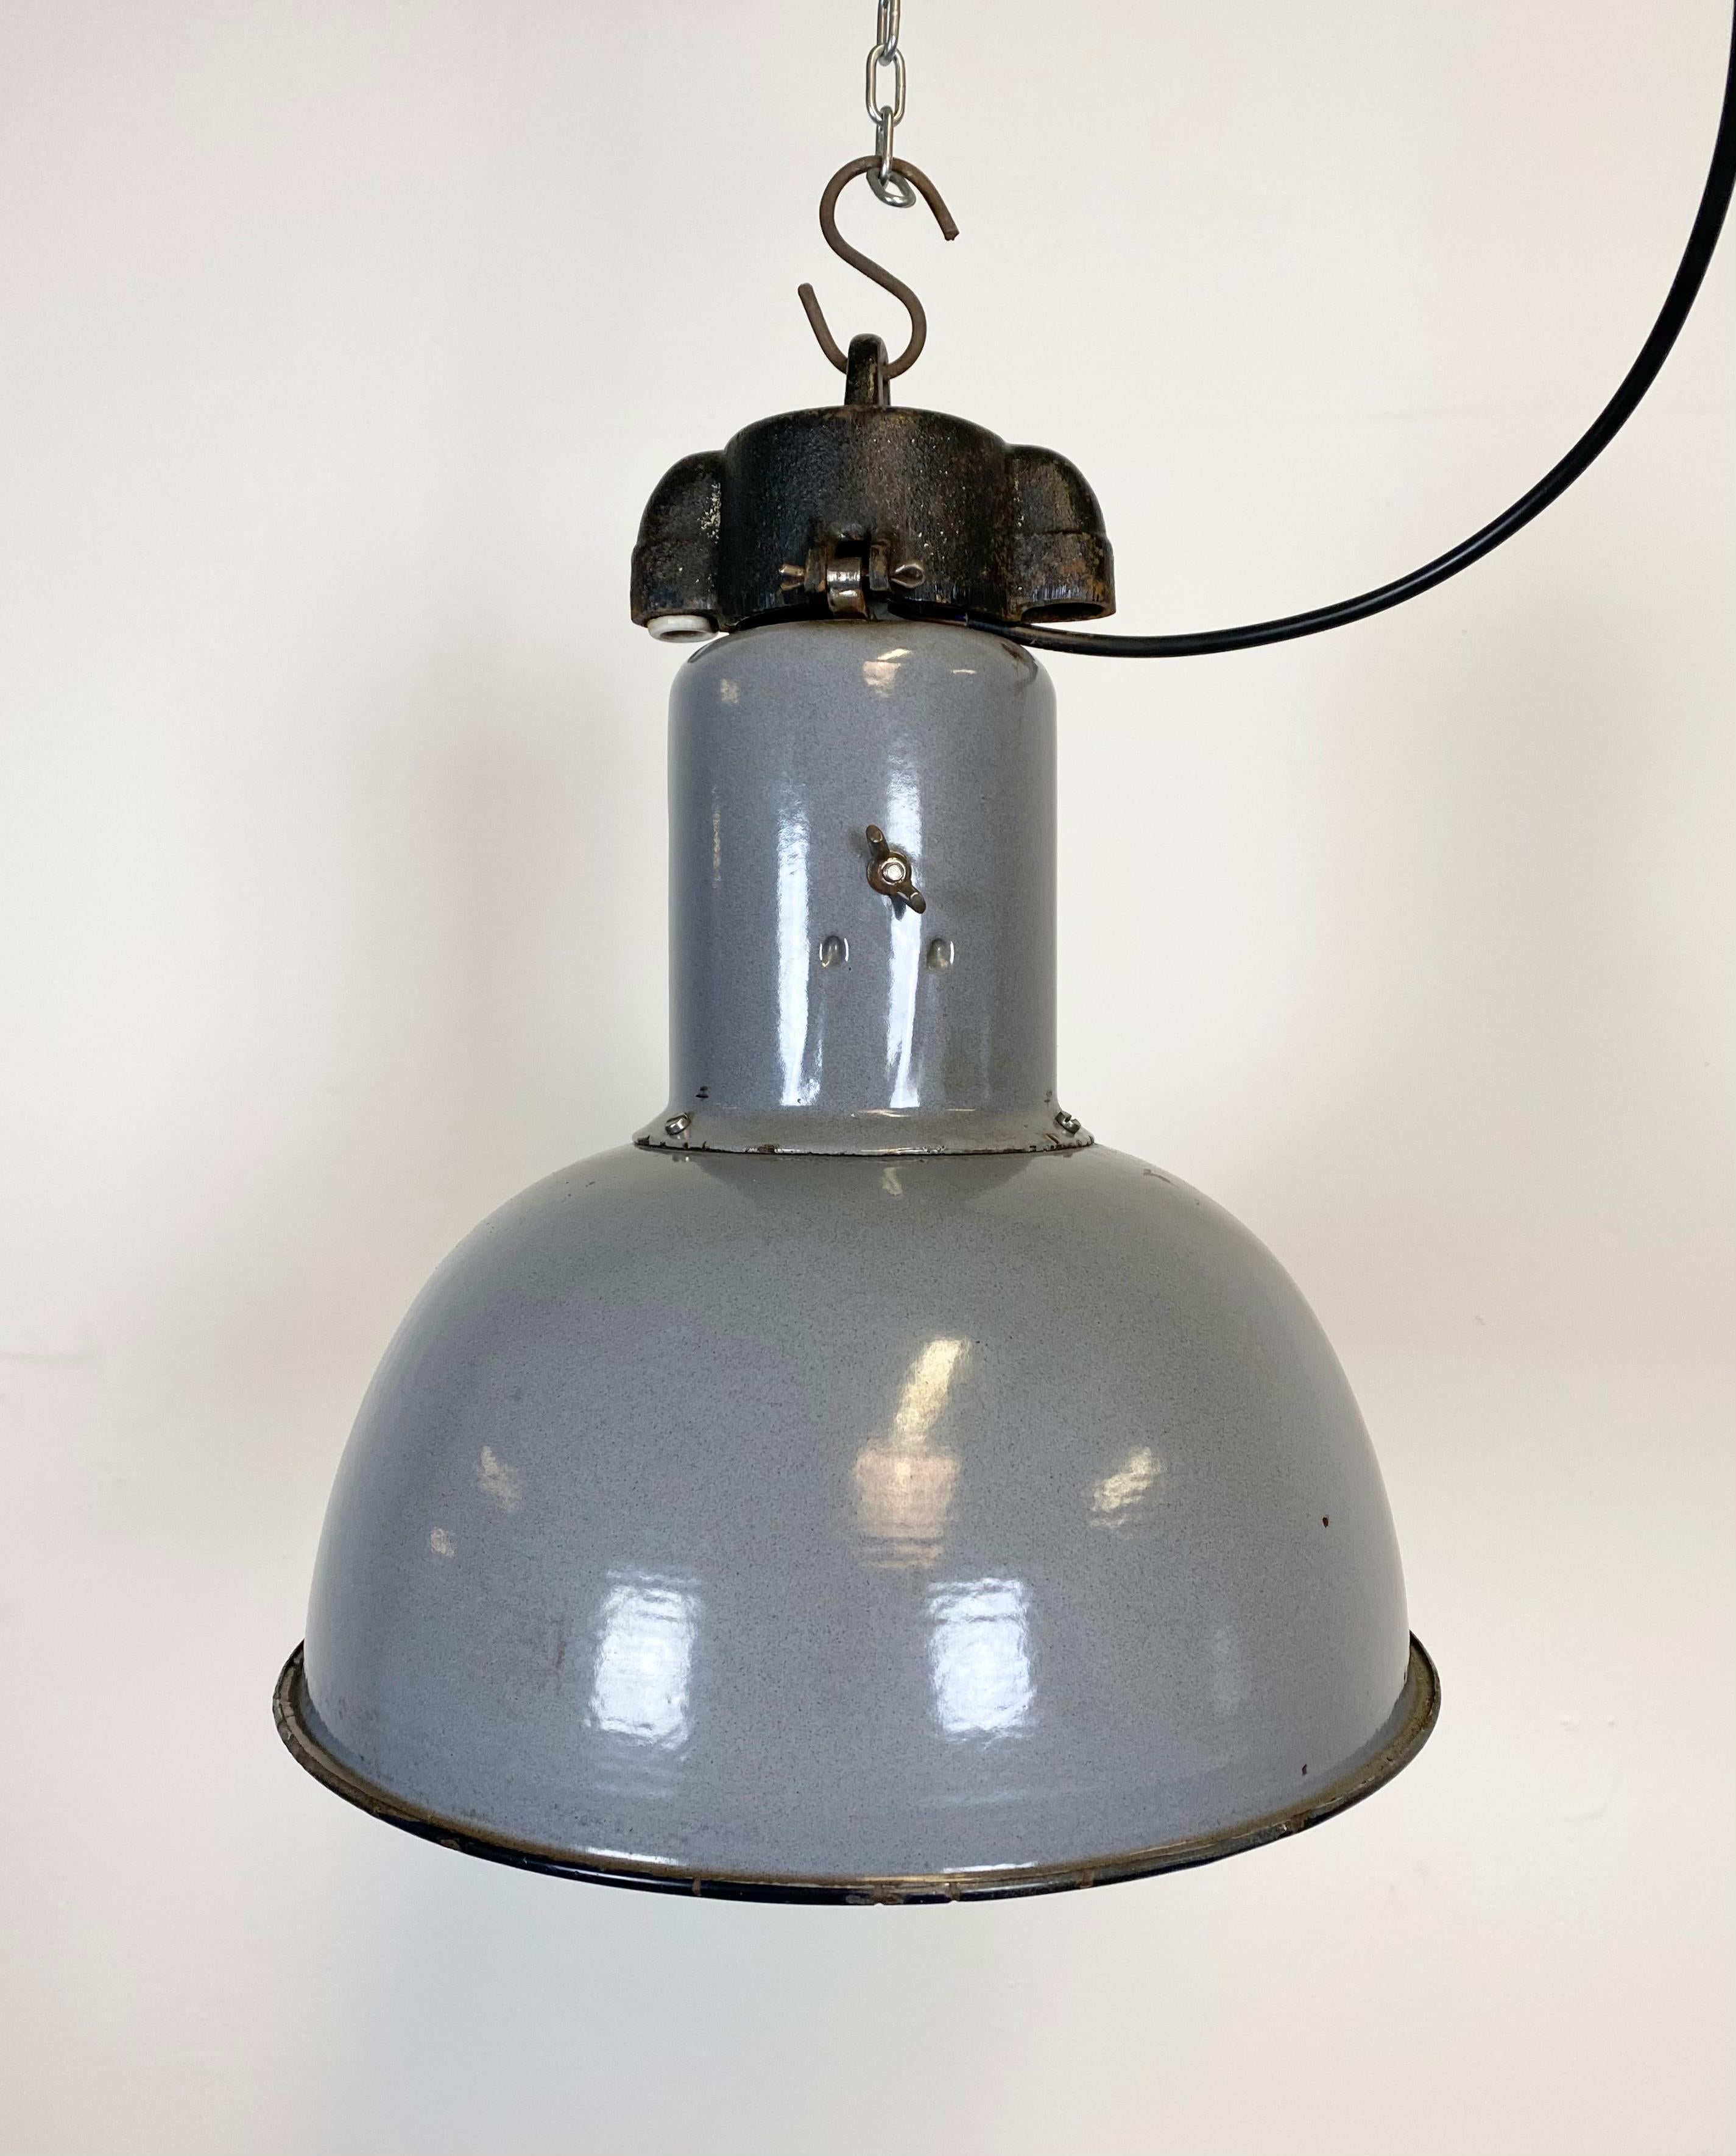 - Lampe suspendue en émail gris 
- Fabriqué dans l'ancienne Tchécoslovaquie 
- Style Bauhaus 
- Conçue dans les années 1930 
- Intérieur en émail blanc 
- Dessus en fonte 
- Nouvelle douille pour ampoules E 27 et câble.